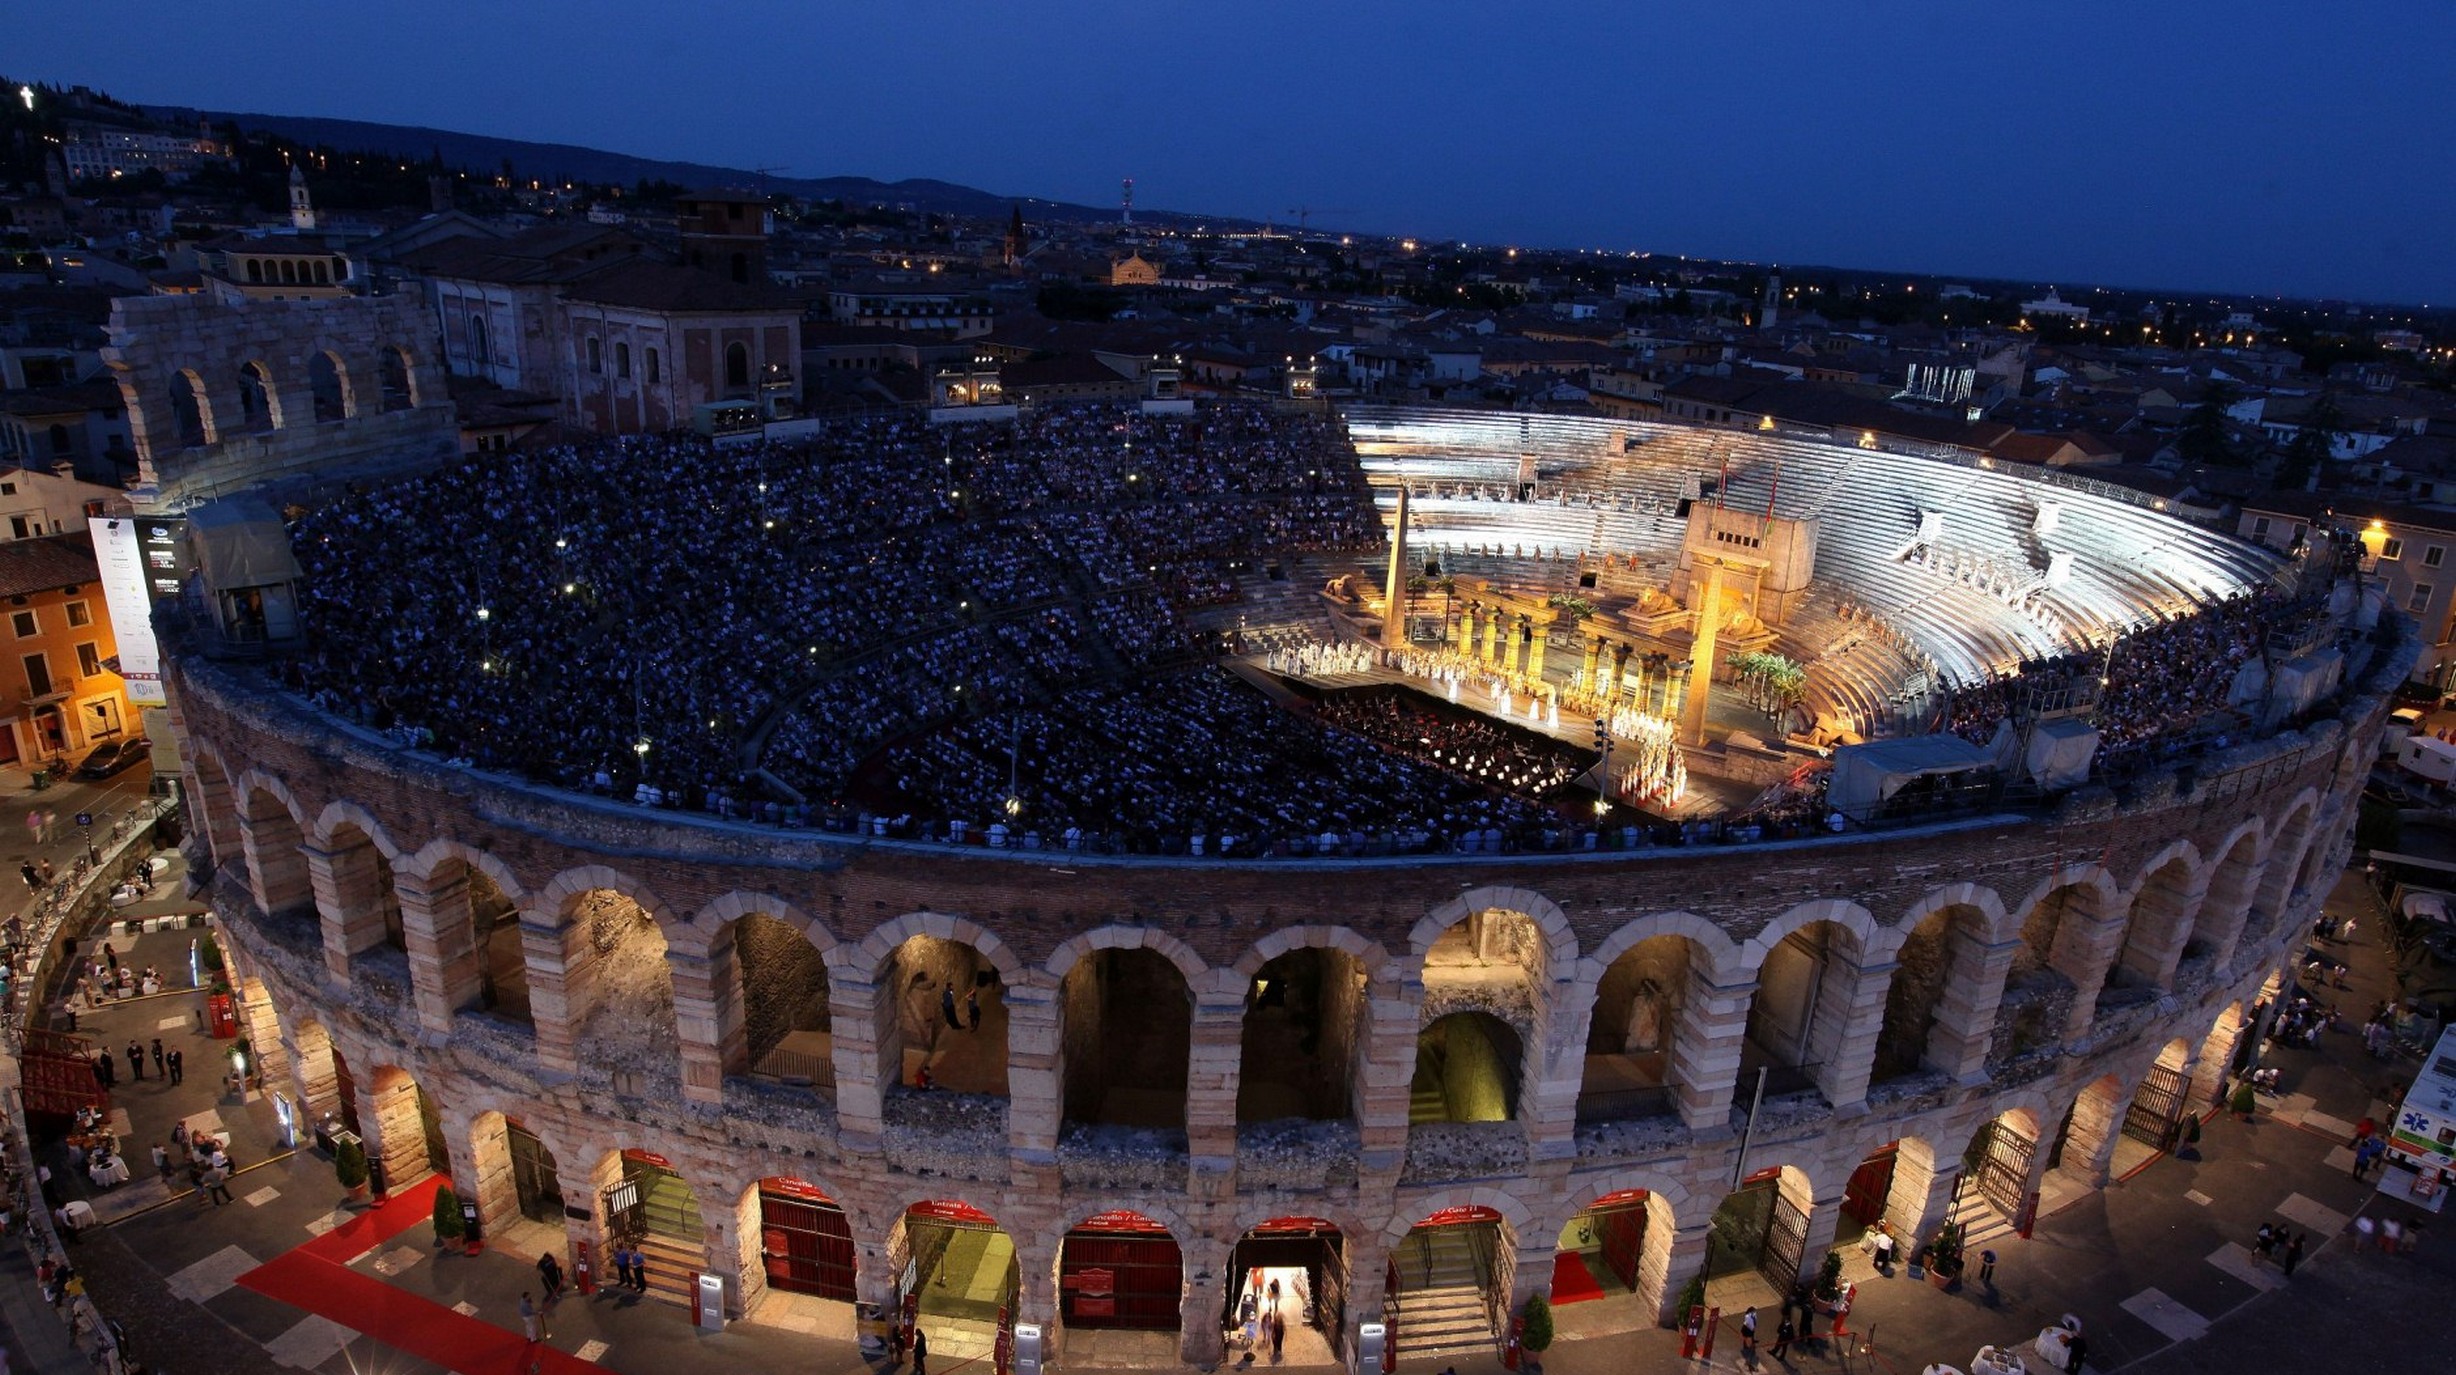 Opera's en concerten tijdens de 100ste editie van het Verona operafestival